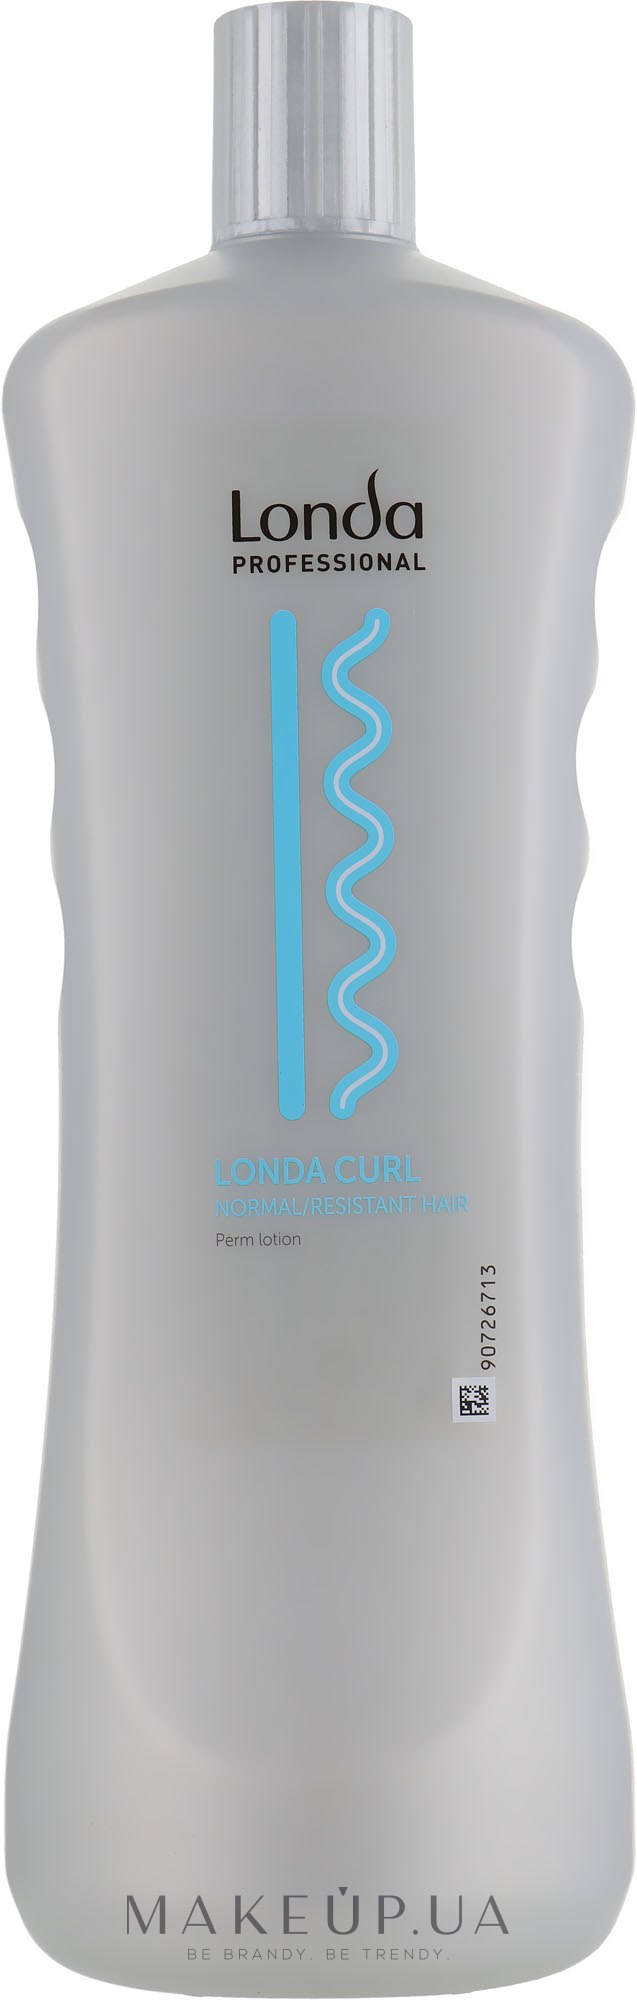 Лосьон для химической завивки, для нормальных и трудно поддающихся волос - Londa Professional Londawave Curl N/R Perm Lotion — фото 1000ml